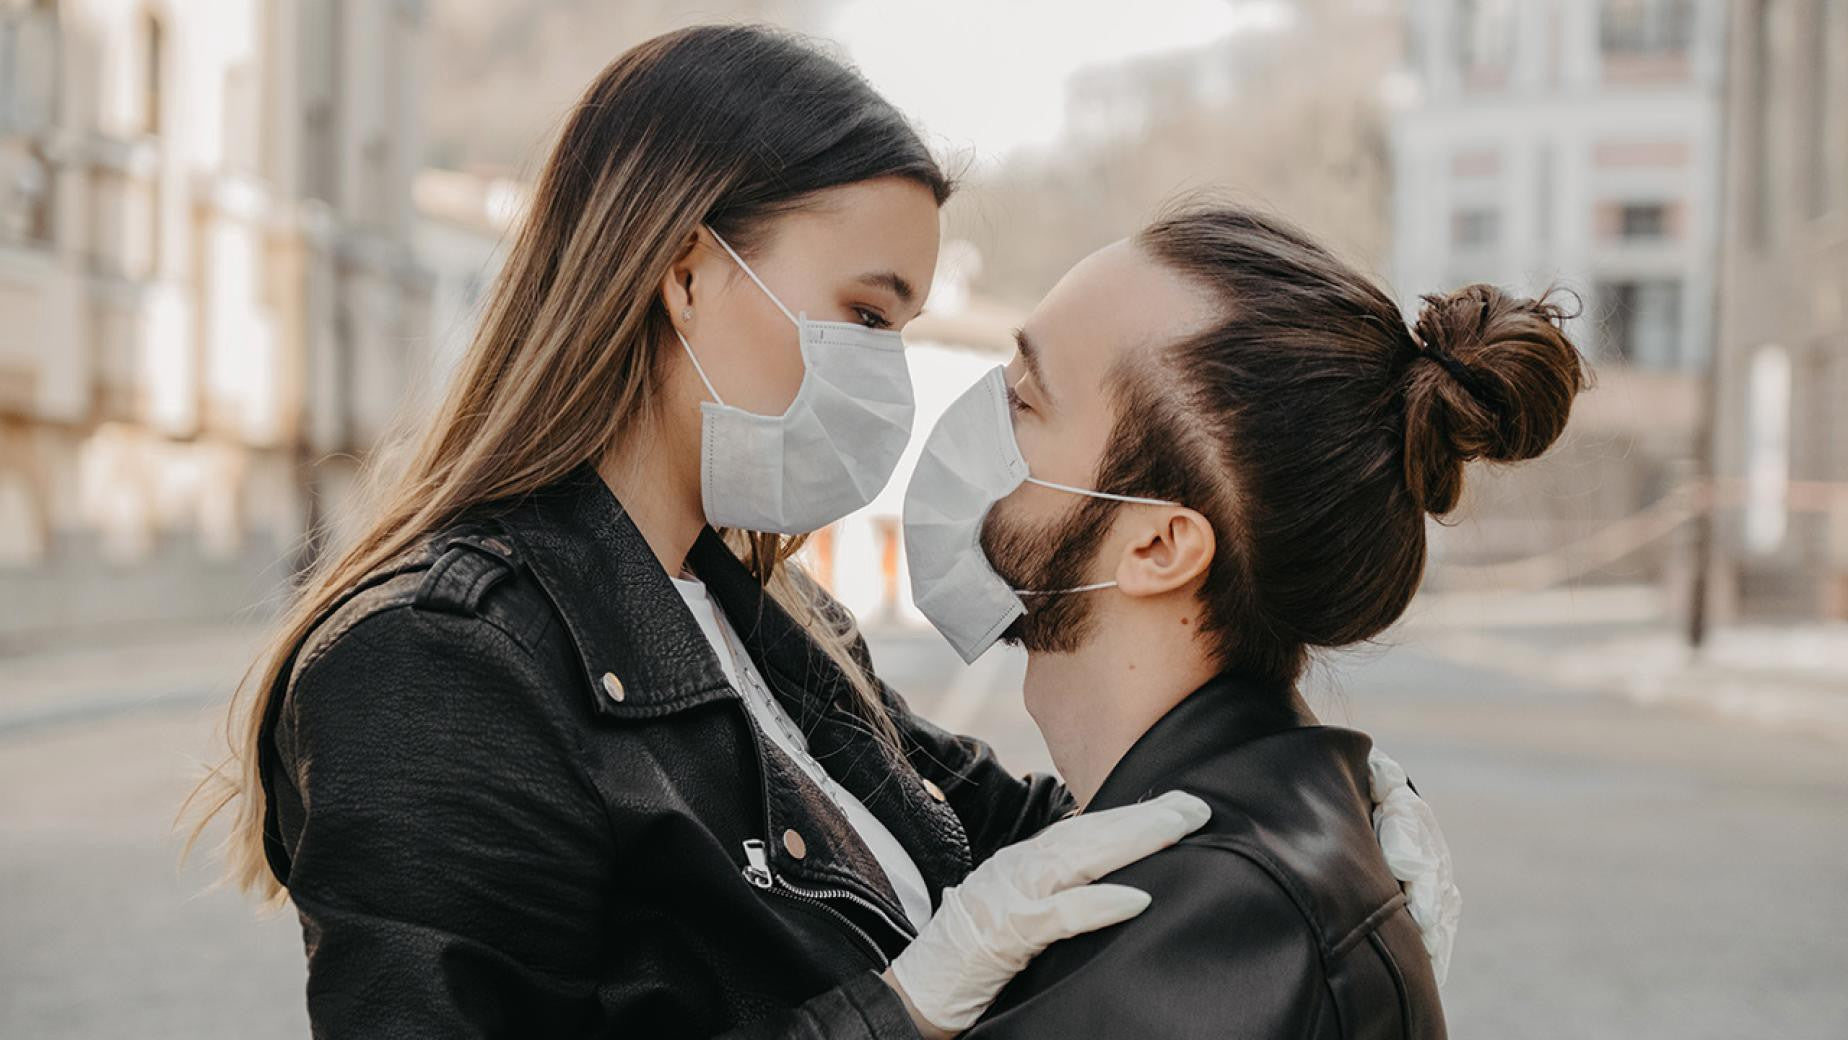 What Dating During the Coronavirus Pandemic Looks Like